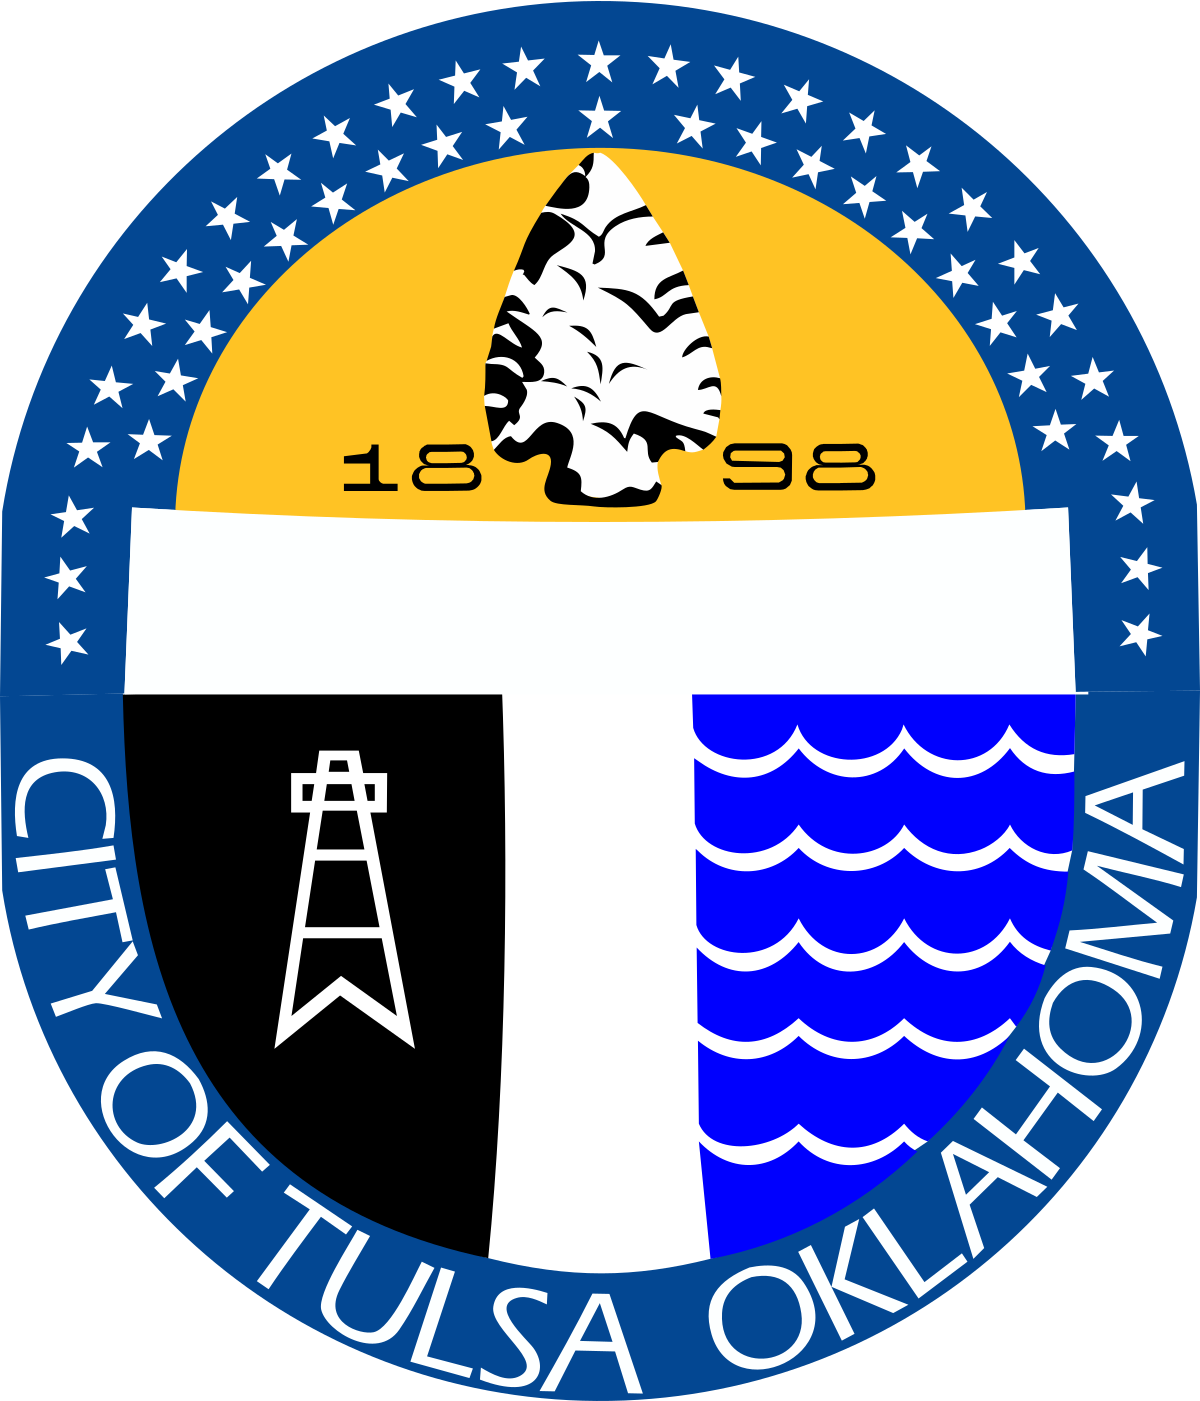 Tulsa logo and seal